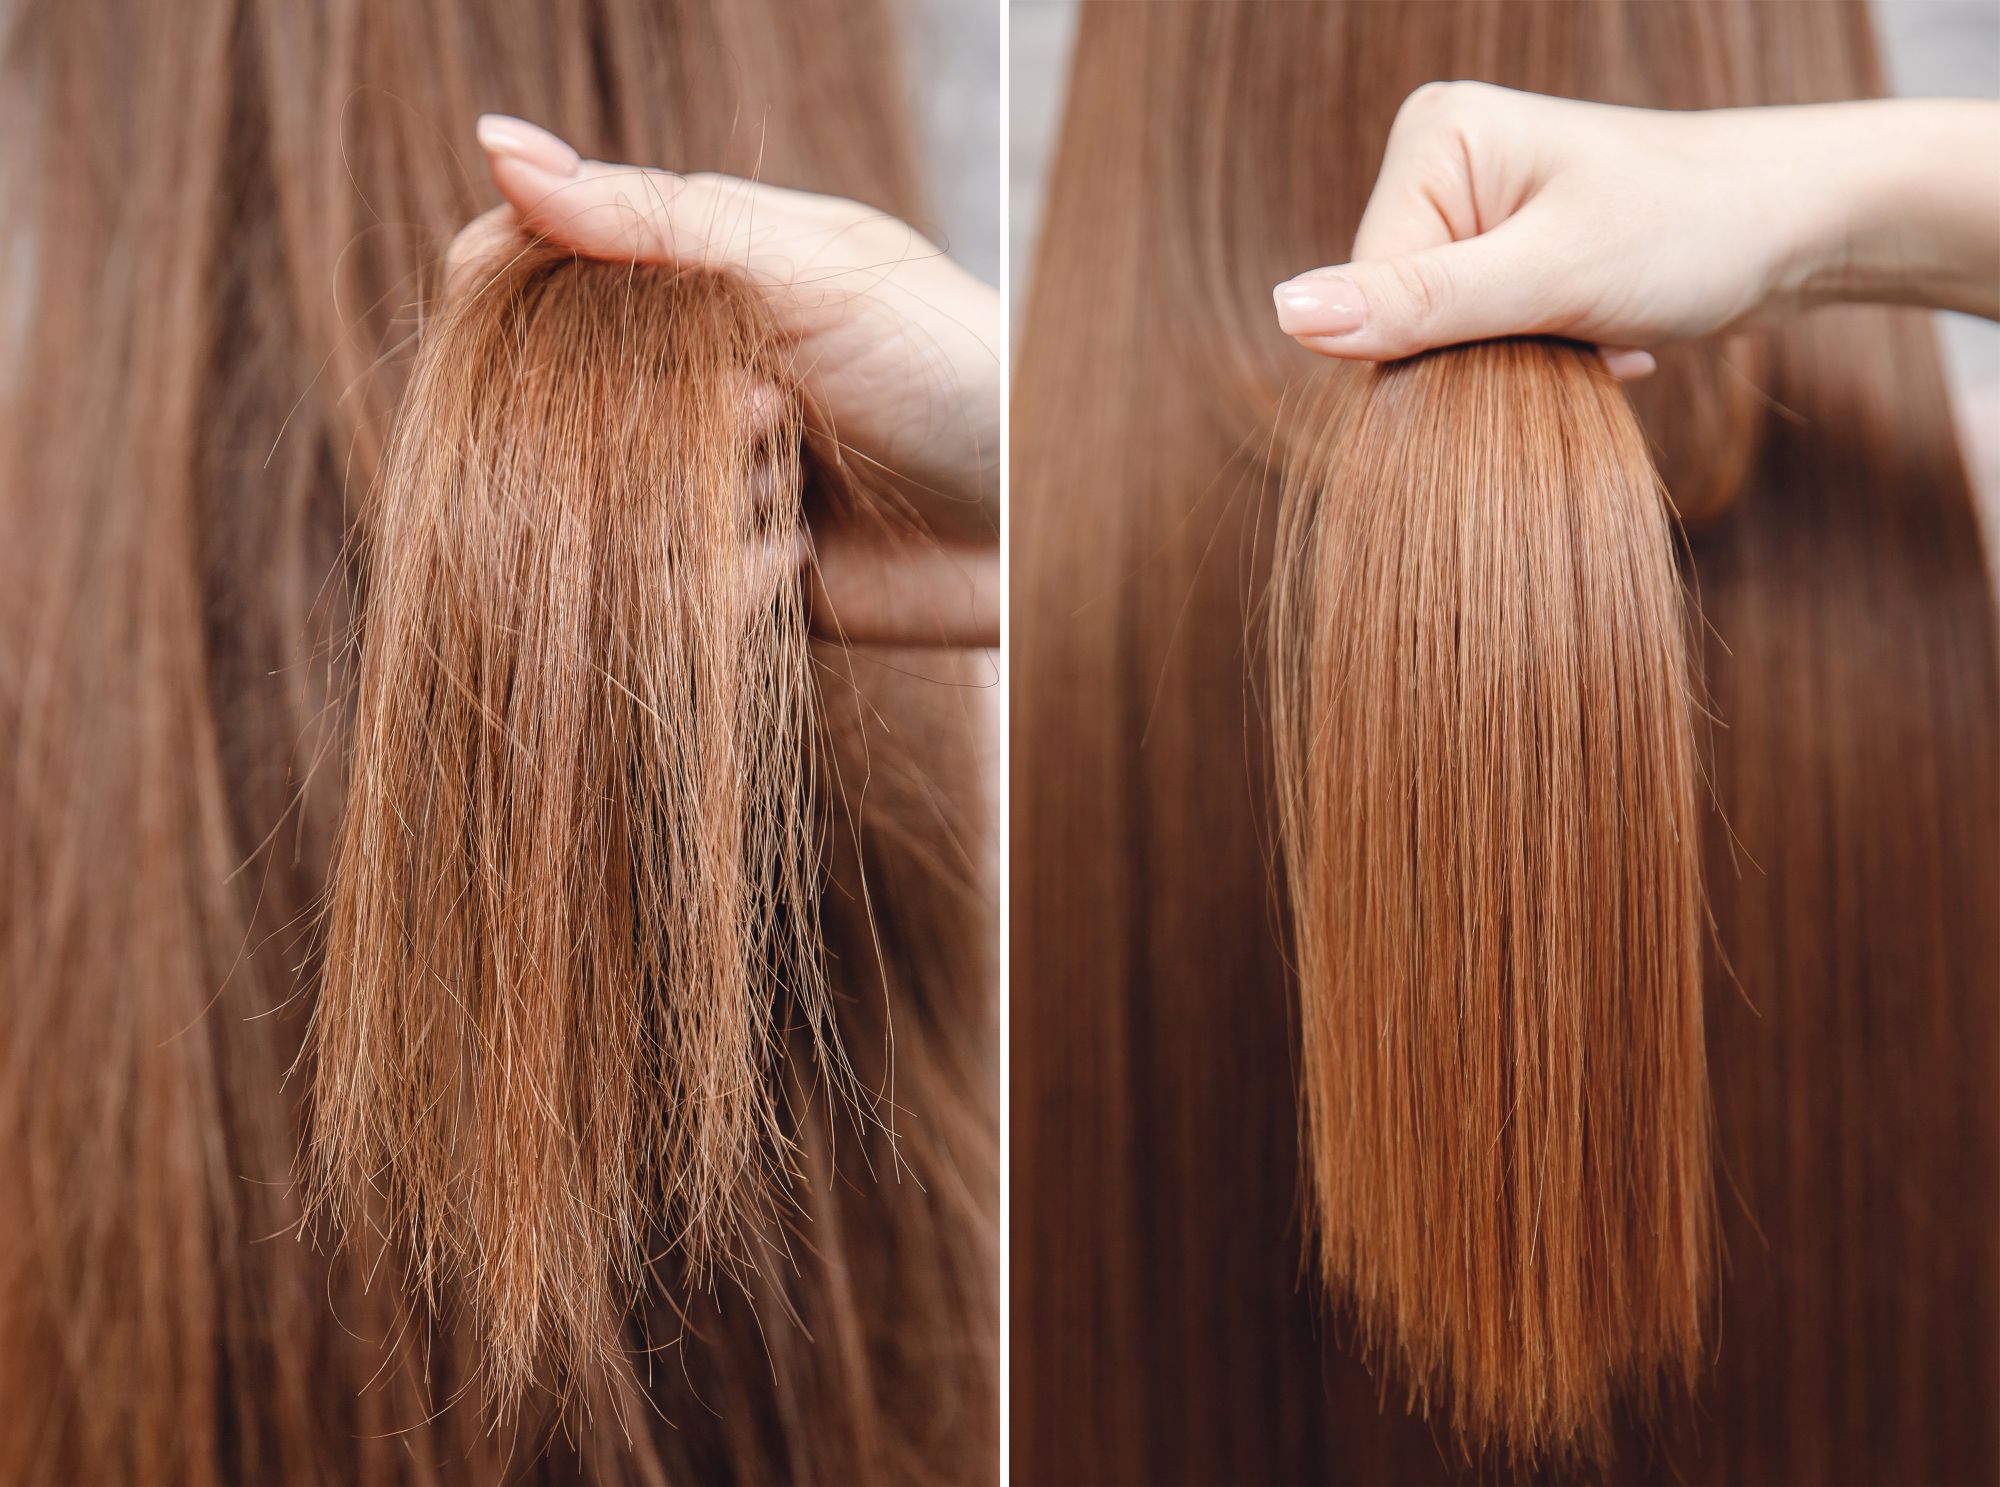 włosy przed i po zabiegu złotymi proteinami